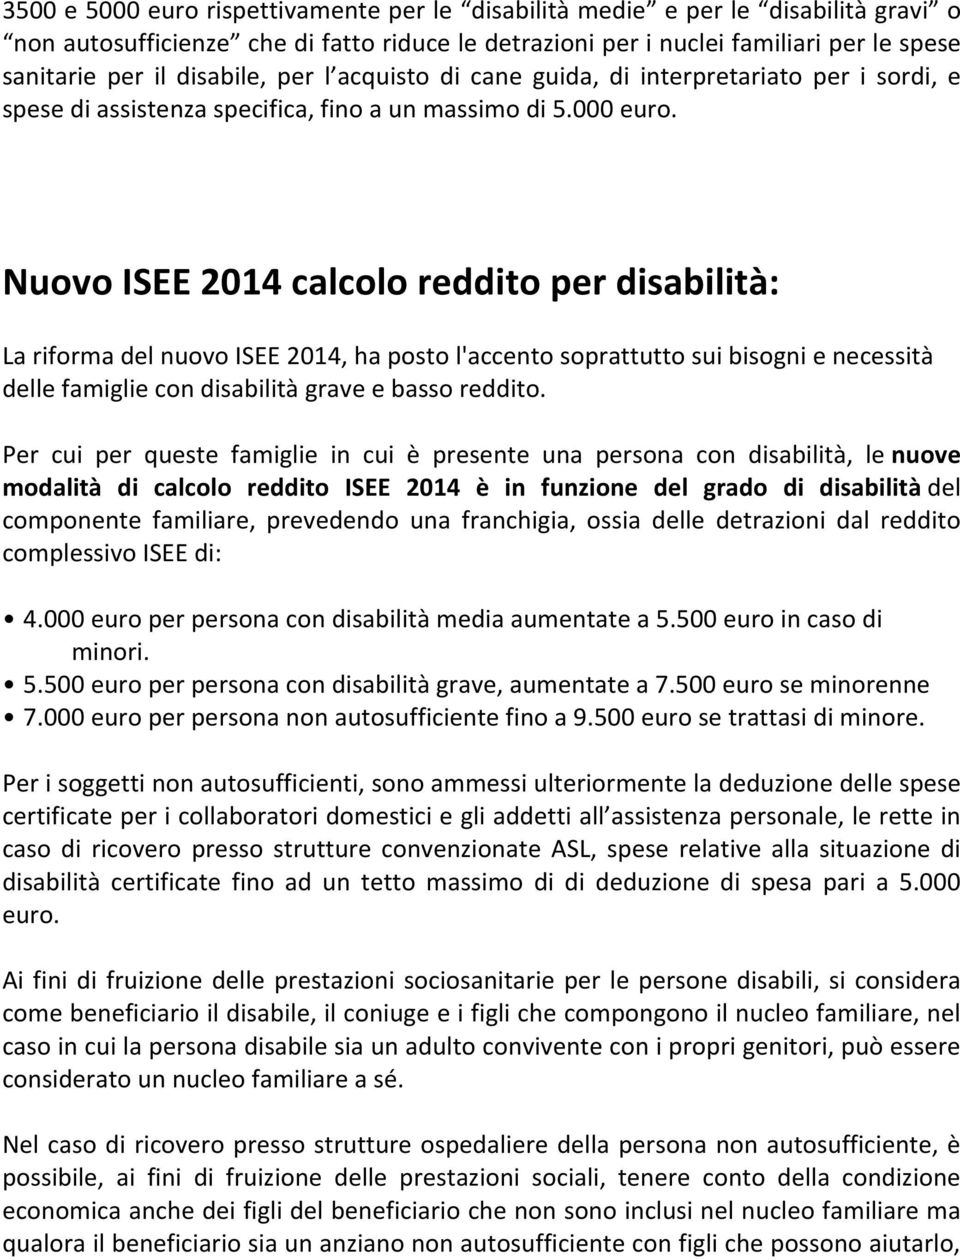 Nuovo ISEE 2014 calcolo reddito per disabilità: La riforma del nuovo ISEE 2014, ha posto l'accento soprattutto sui bisogni e necessità delle famiglie con disabilità grave e basso reddito.